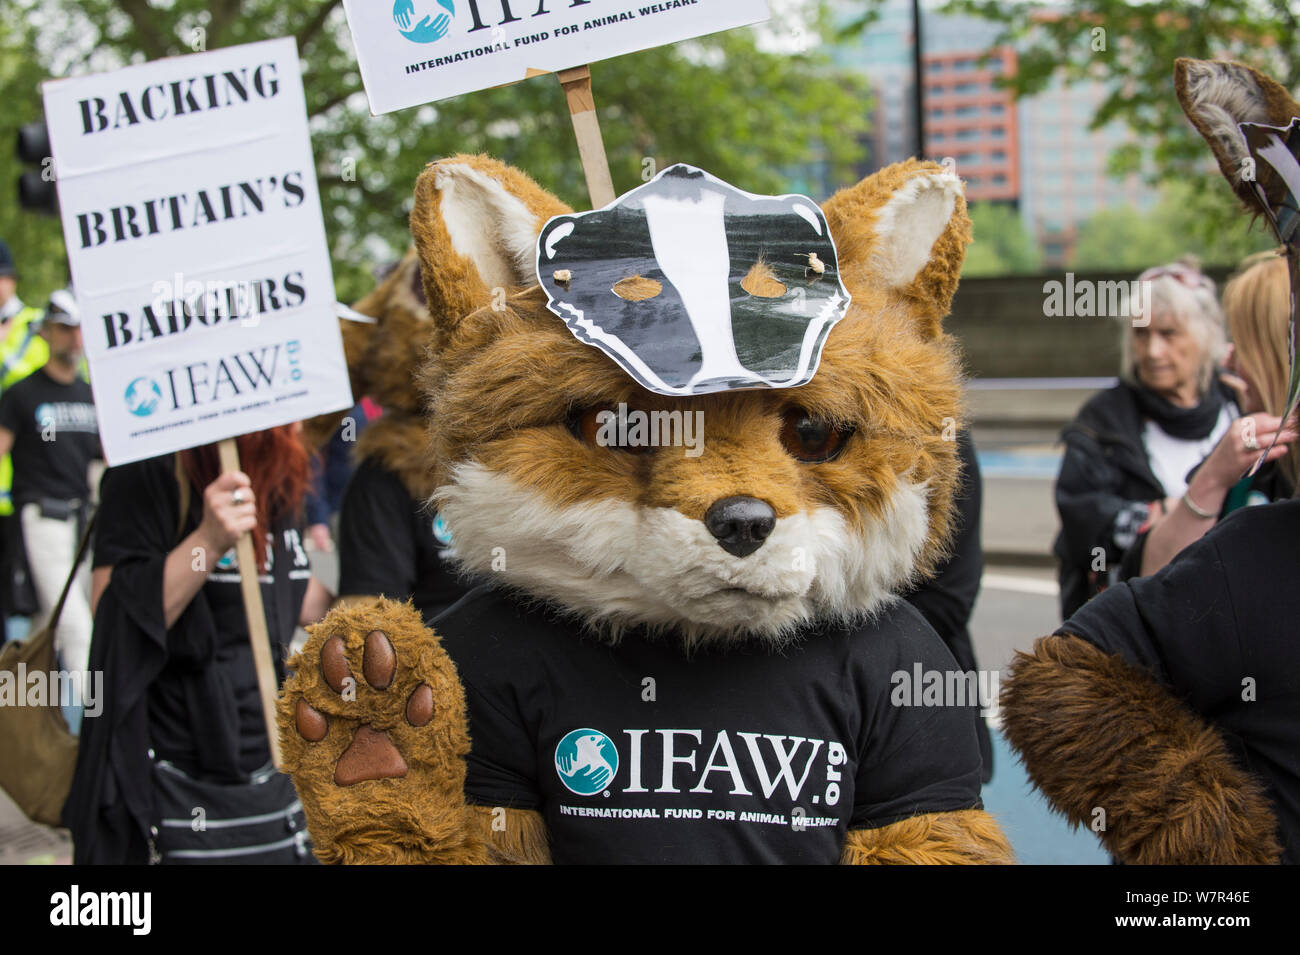 Personne dans un costume de renard, avec un masque de blaireau et d'un fonds international pour le bien-être des animaux, des costumes, à l'abattage du blaireau mars, Londres, 1er juin 2013 Banque D'Images